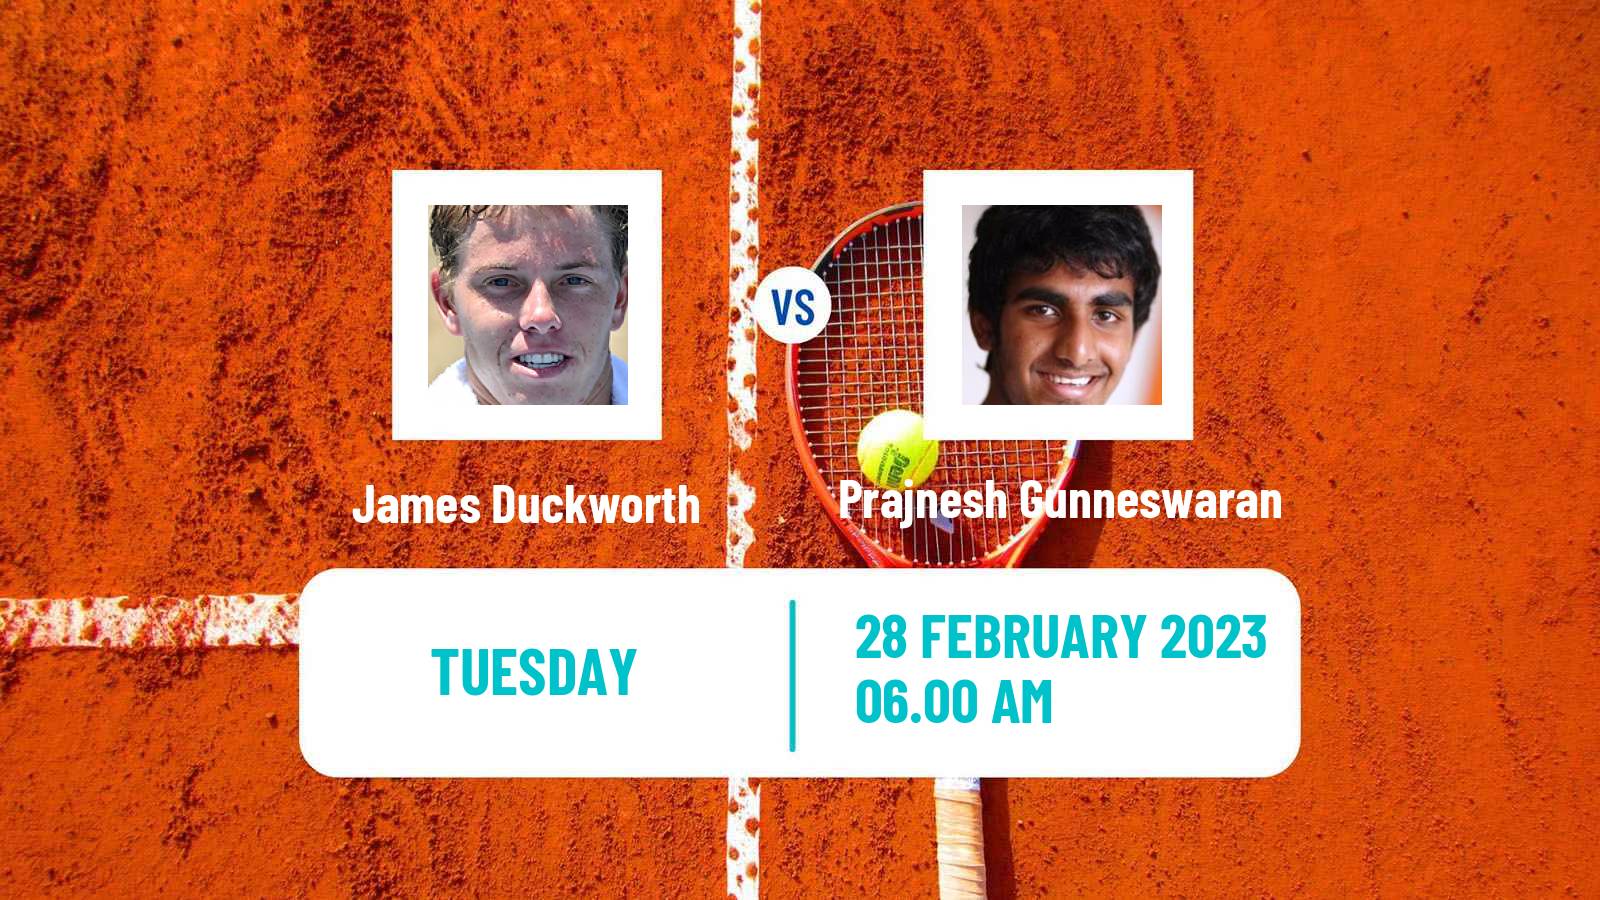 Tennis ATP Challenger James Duckworth - Prajnesh Gunneswaran